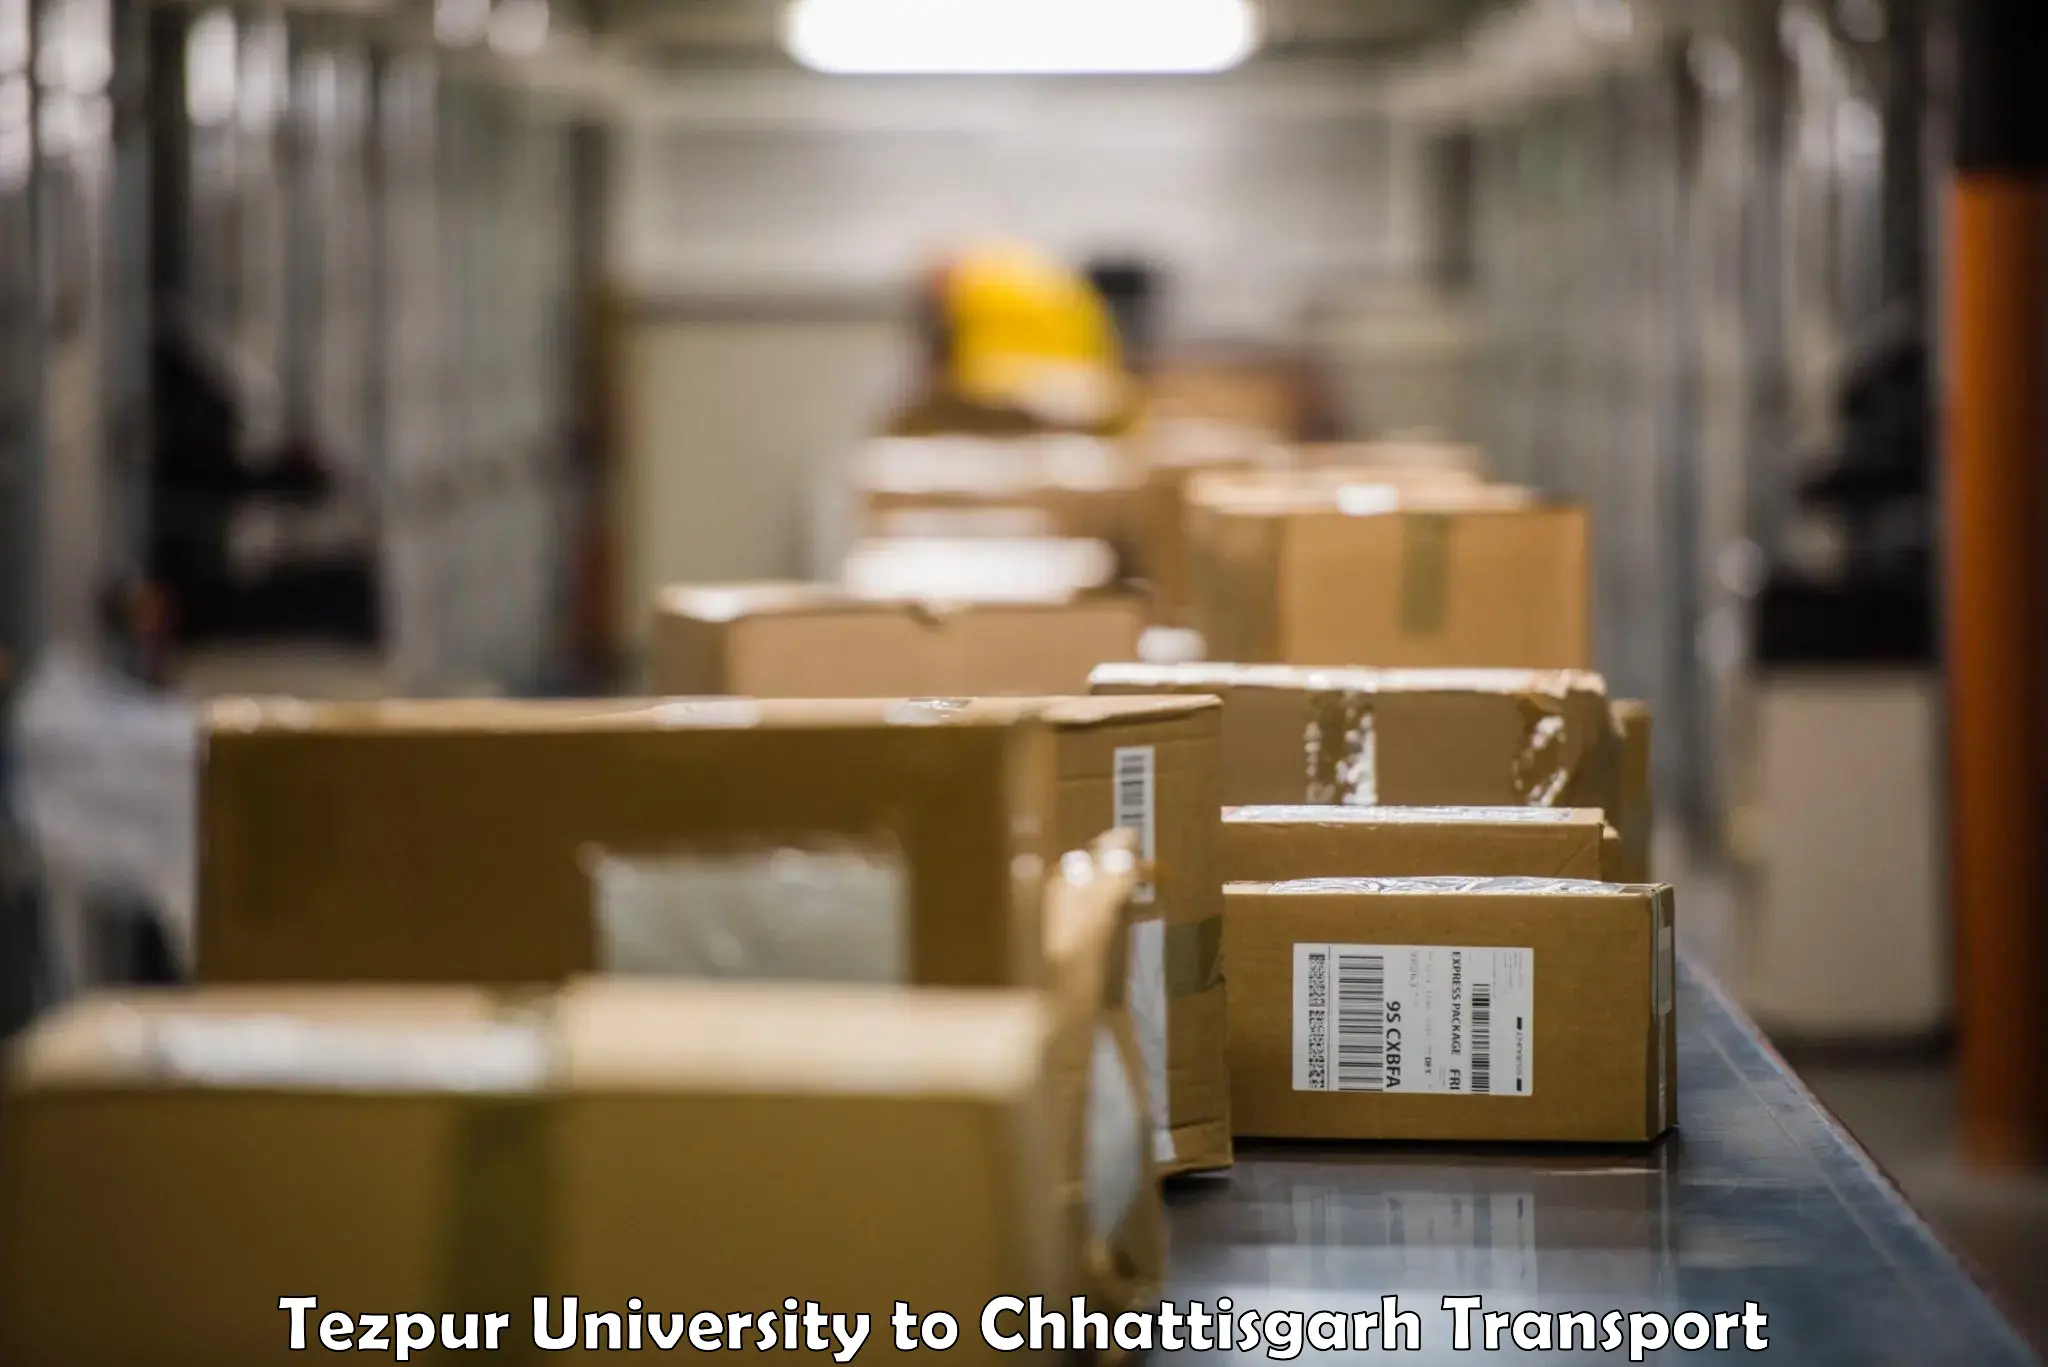 Parcel transport services Tezpur University to Jashpur